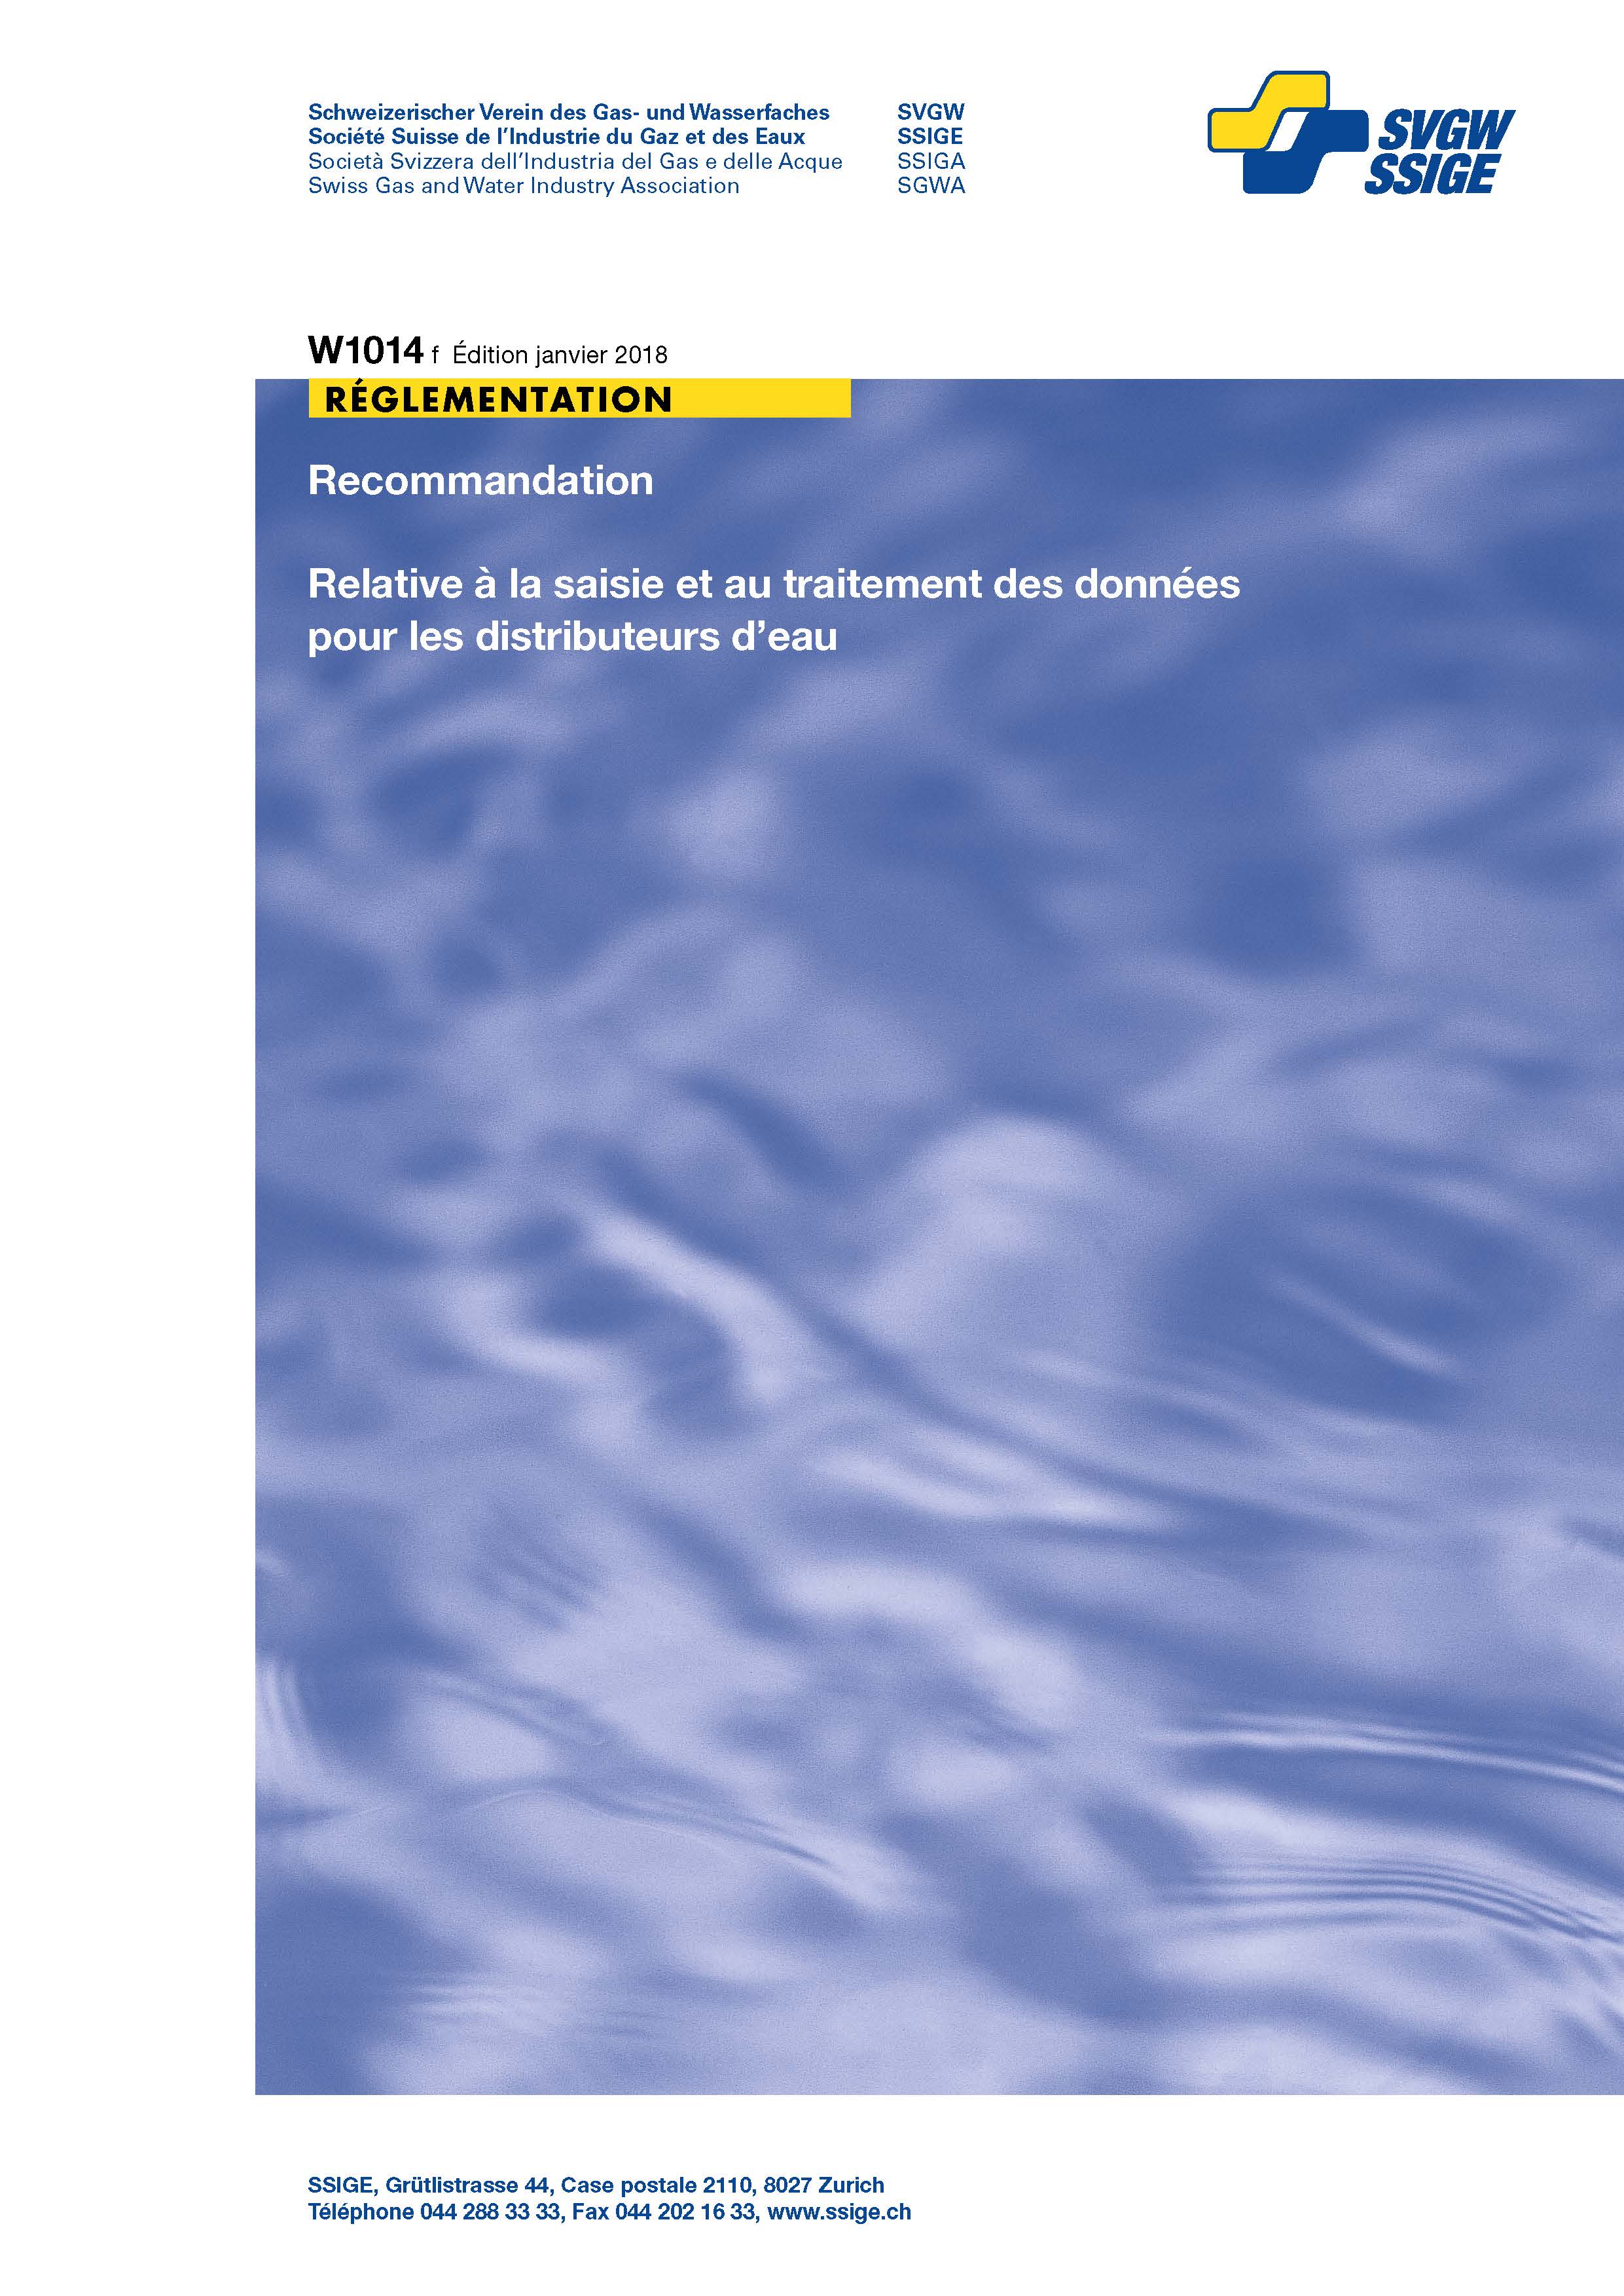 W1014 f Recommandation; Relative à la saisie et au traitement des données pour les distributeurs d'eau (2)